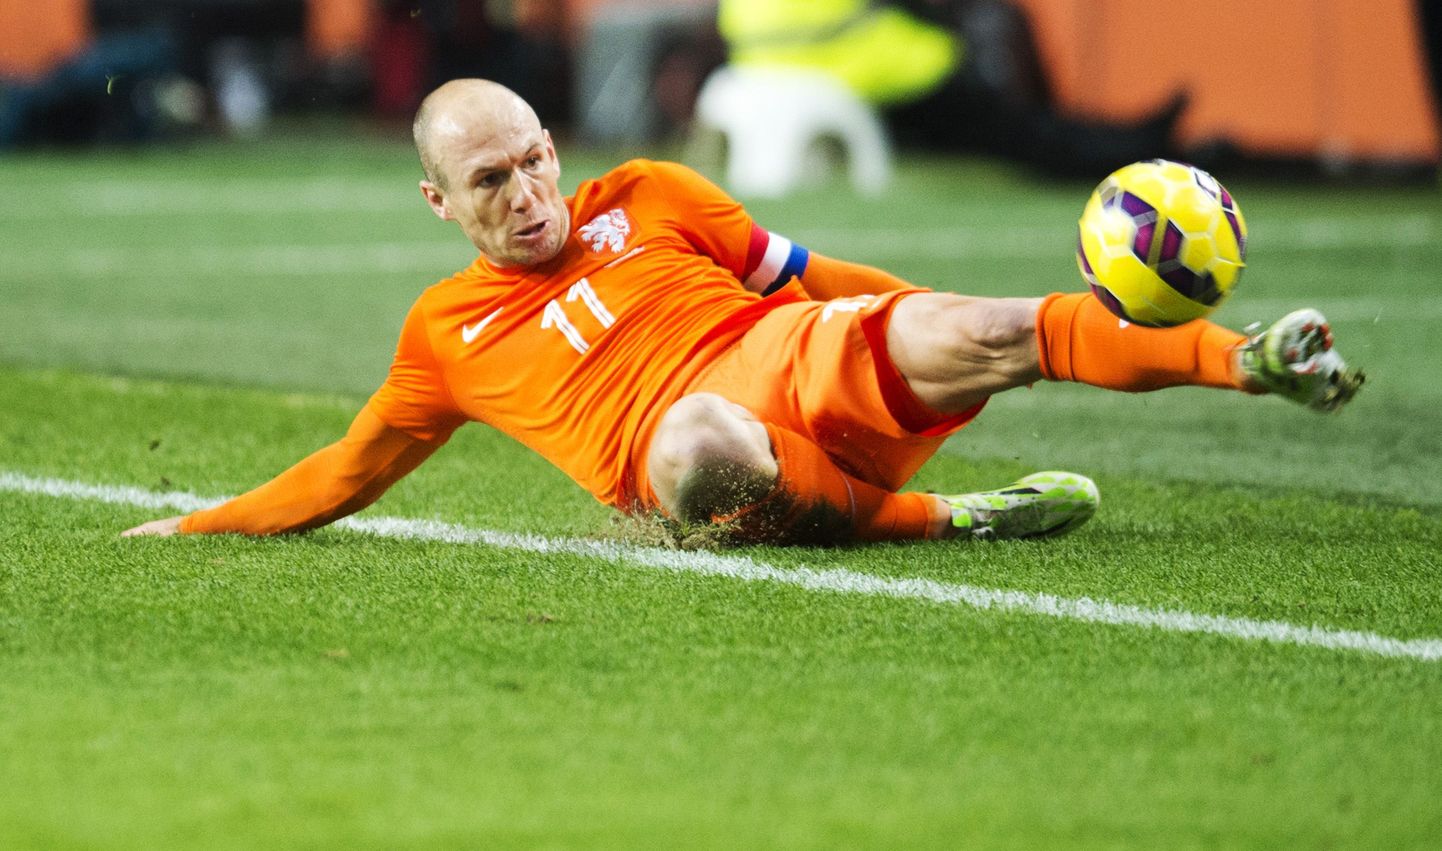 Hollandi jalgpallikoondis on EM-valiksarjas tõsistes raskustes ja praeguse seisuga Arjen Robbenit järgmisel suvel EMil ei näe.